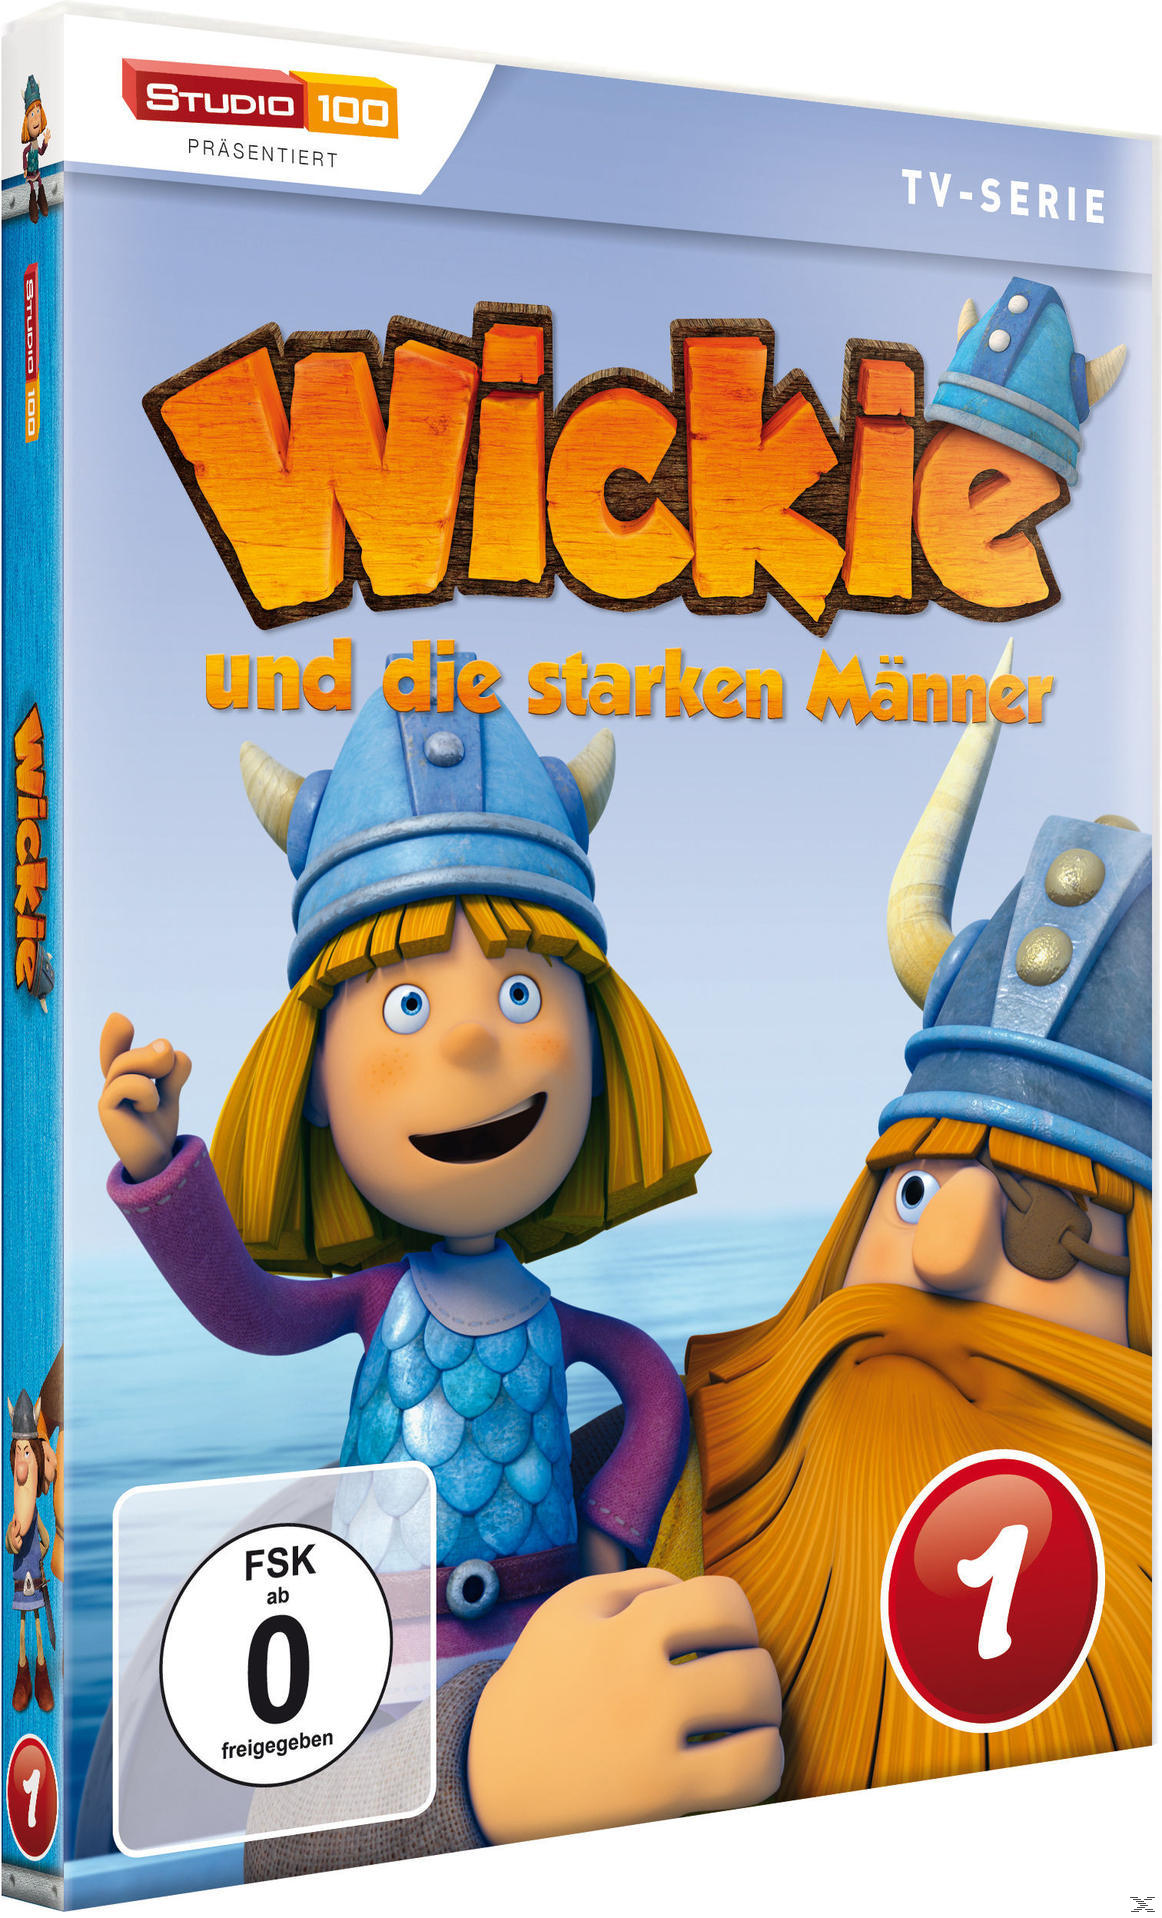 1 und Wickie starken DVD DVD - die Männer